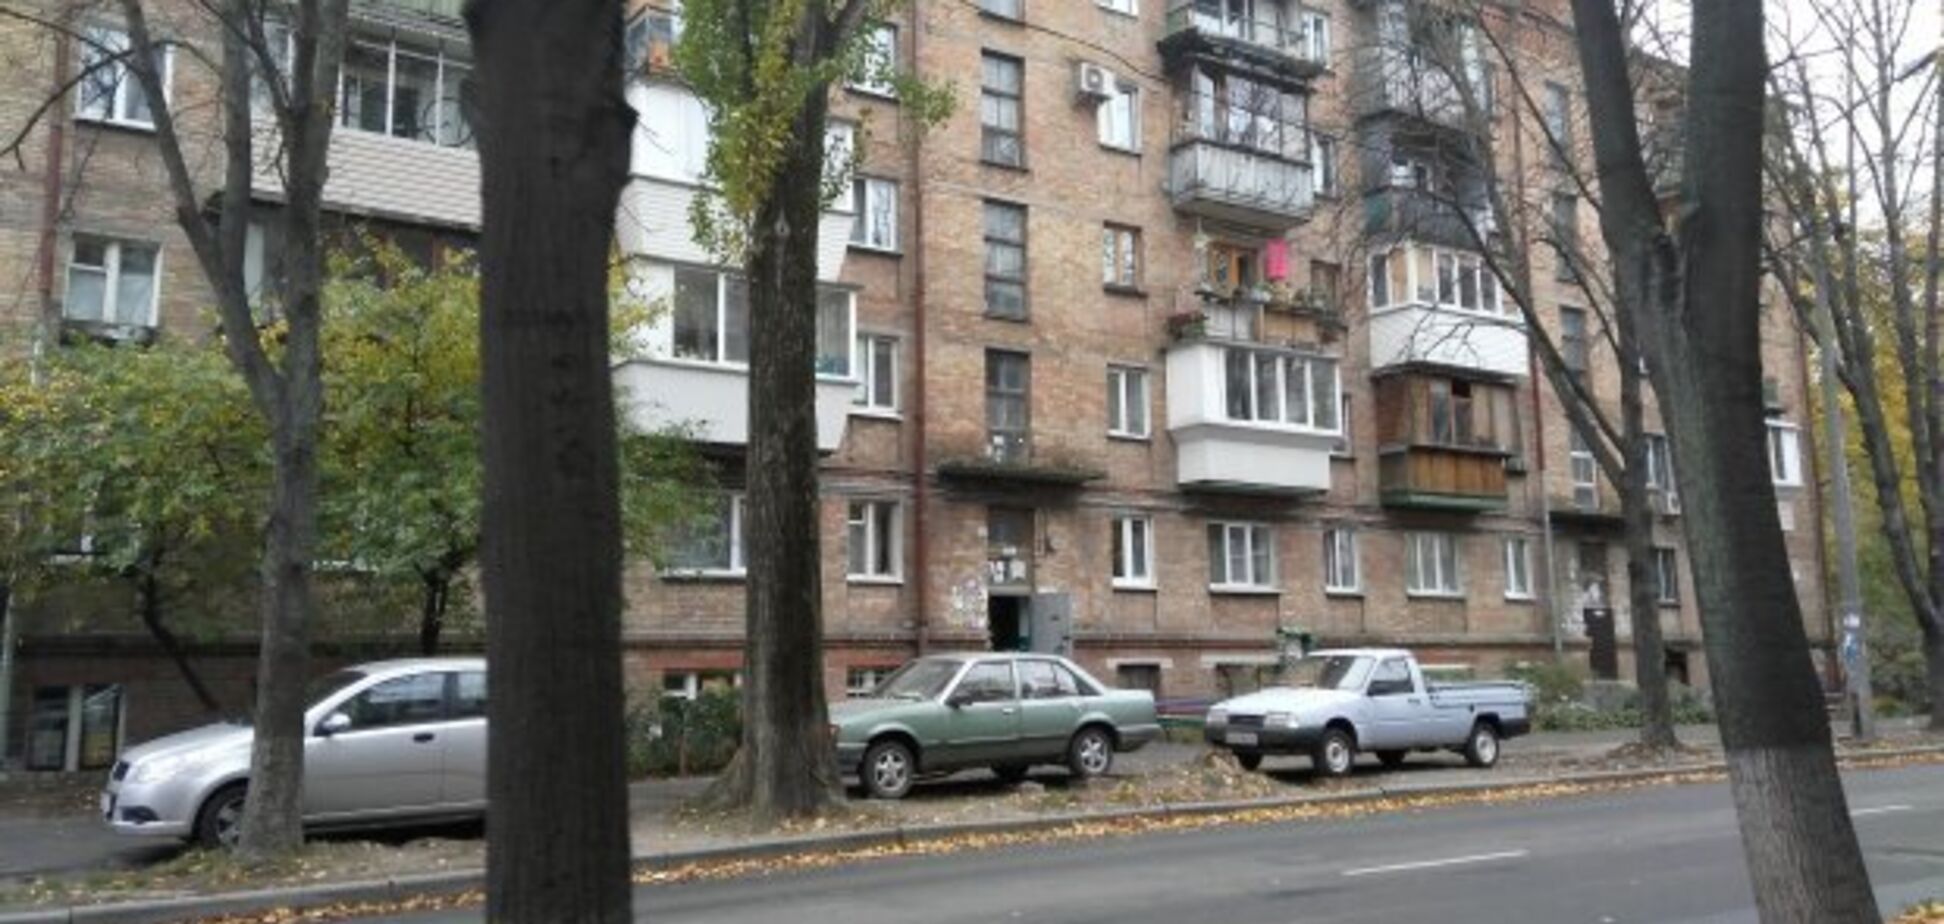 Як прискорити оновлення хрущовок: в Києві озвучили план